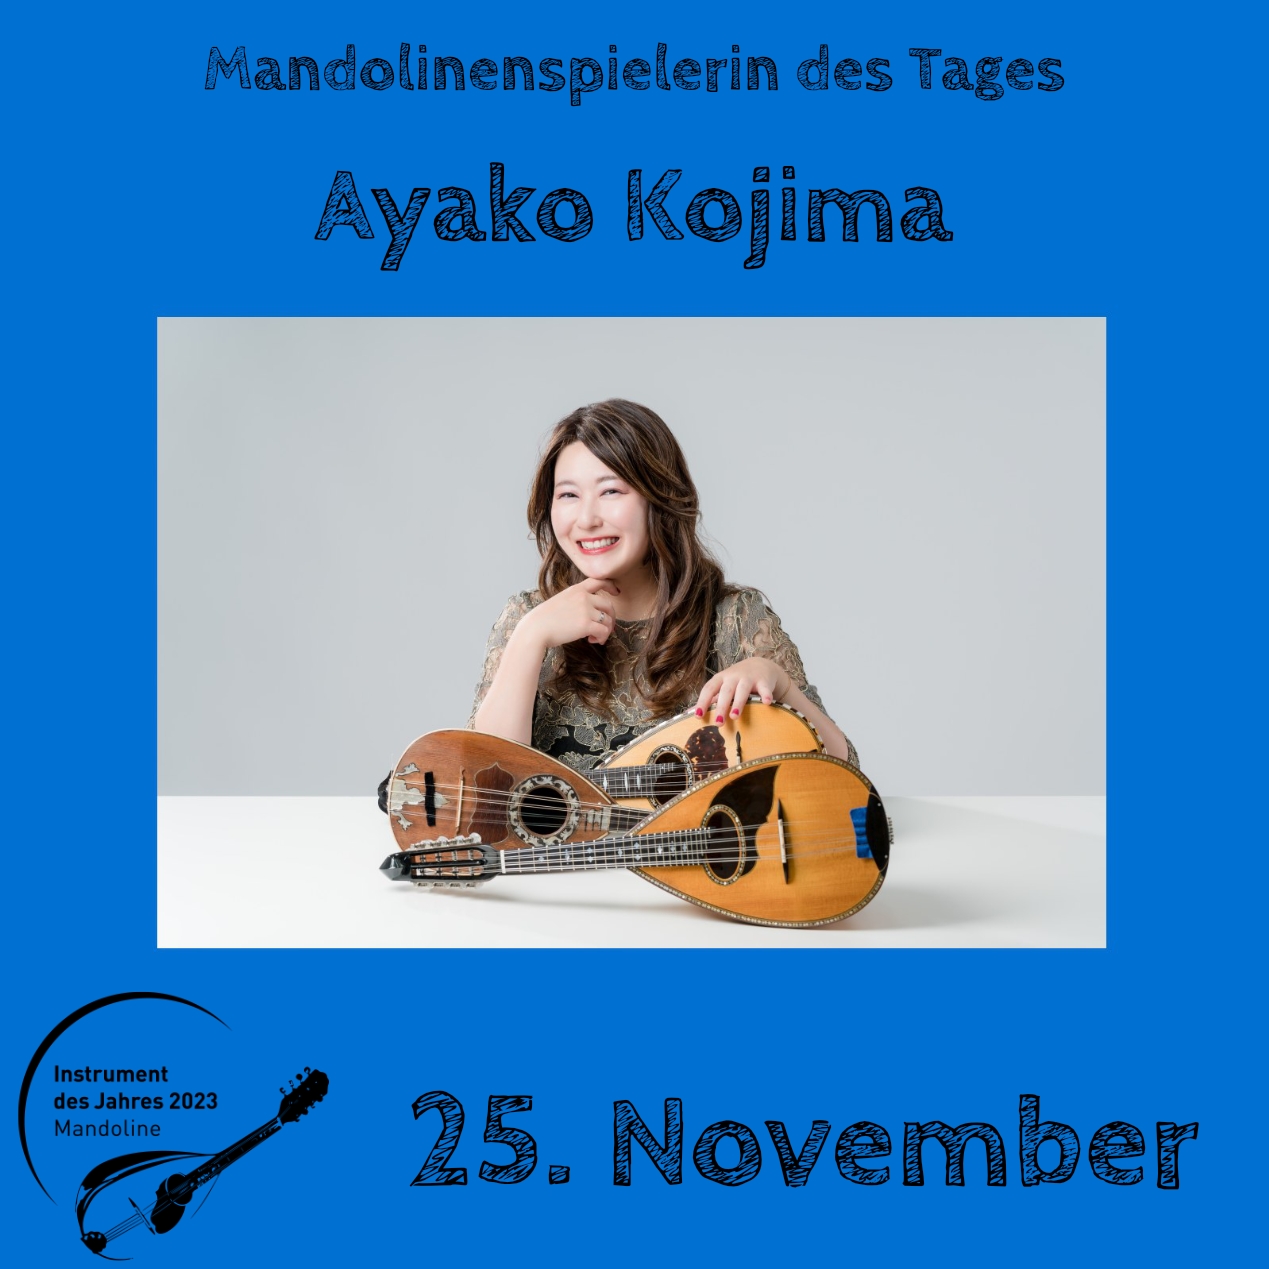 25. November - Ayako Kojima Instrument des Jahres 2023 Mandolinenspieler Mandolinenspielerin des Tages